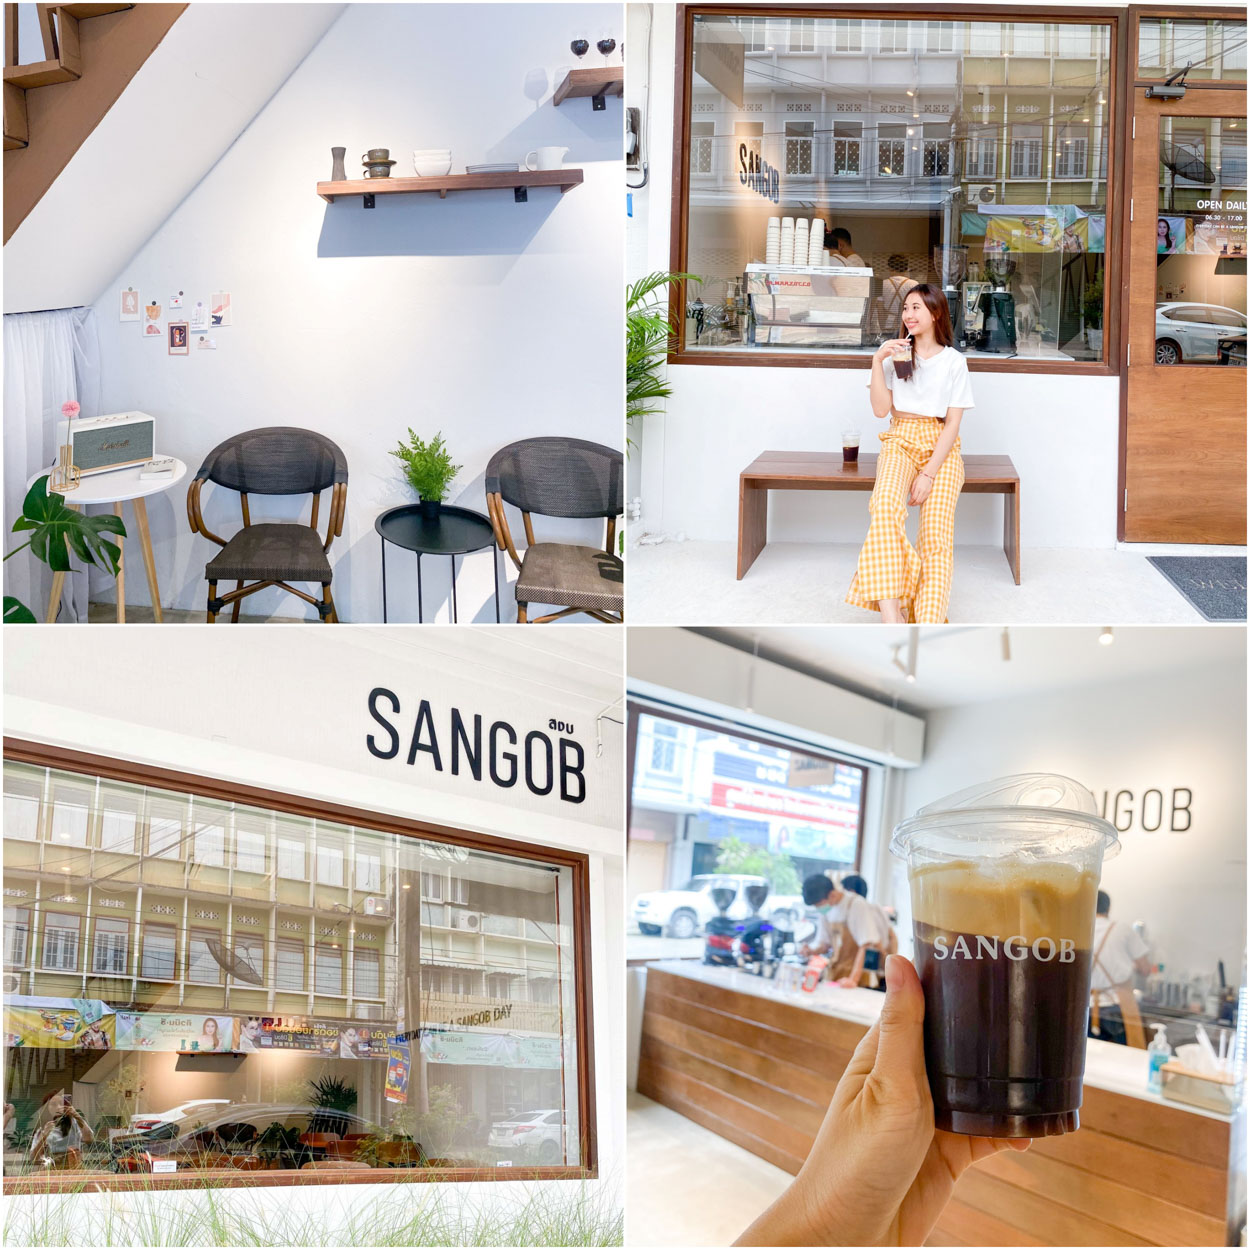 สงบ Sangob ร้านกาแฟที่อยู่ในเขตชุมชนย่านเมืองเก่าจังหวัดอุบลราชธานี ทีเด็ดของร้านนี้อยู่ที่กาแฟค่ะ